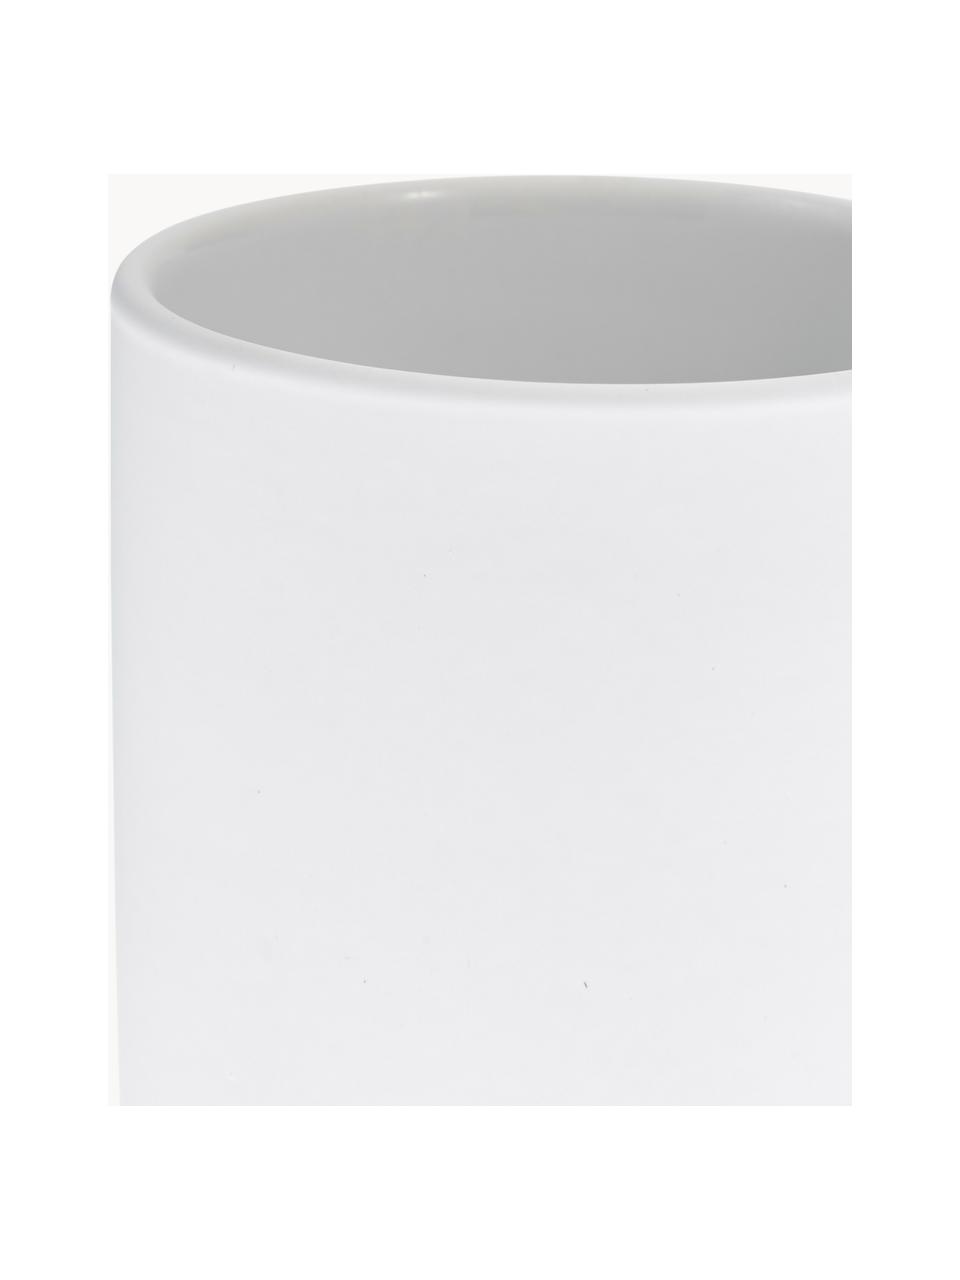 Kubek na szczoteczki Ume, Ceramika pokryta miękką w dotyku powłoką (tworzywo sztuczne), Biały, Ø 8 x W 10 cm